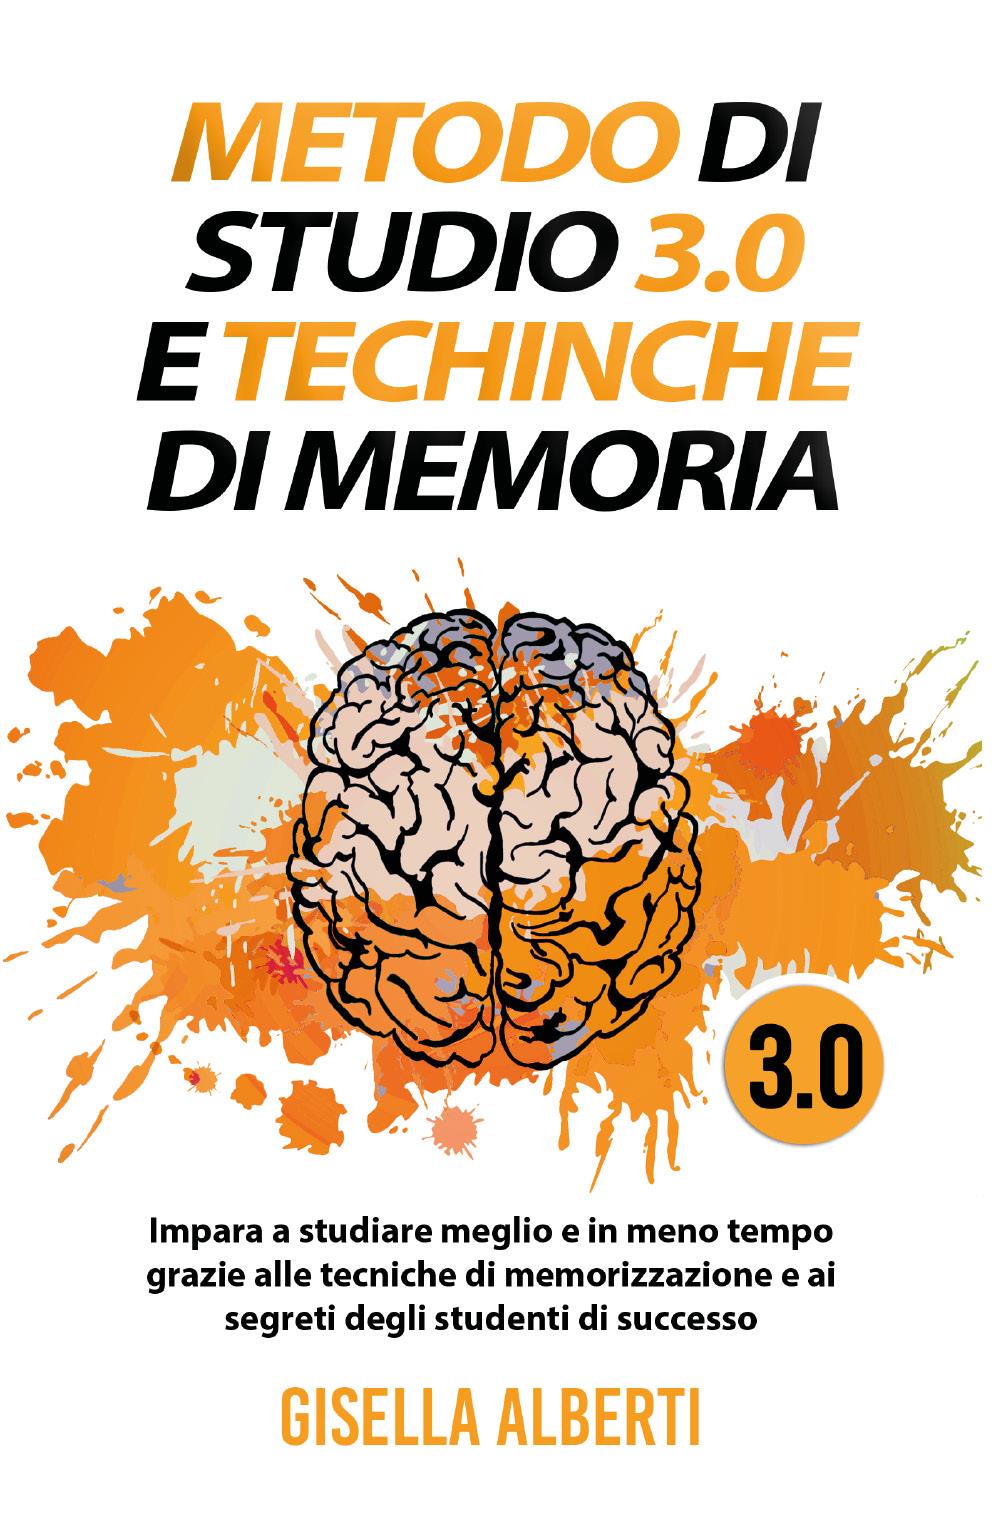 METODO DI STUDIO 3.0 E TECNICHE DI MEMORIA; Impara a studiare meglio e in meno tempo grazie alle tecniche di memorizzazione e ai segreti degli studenti di successo